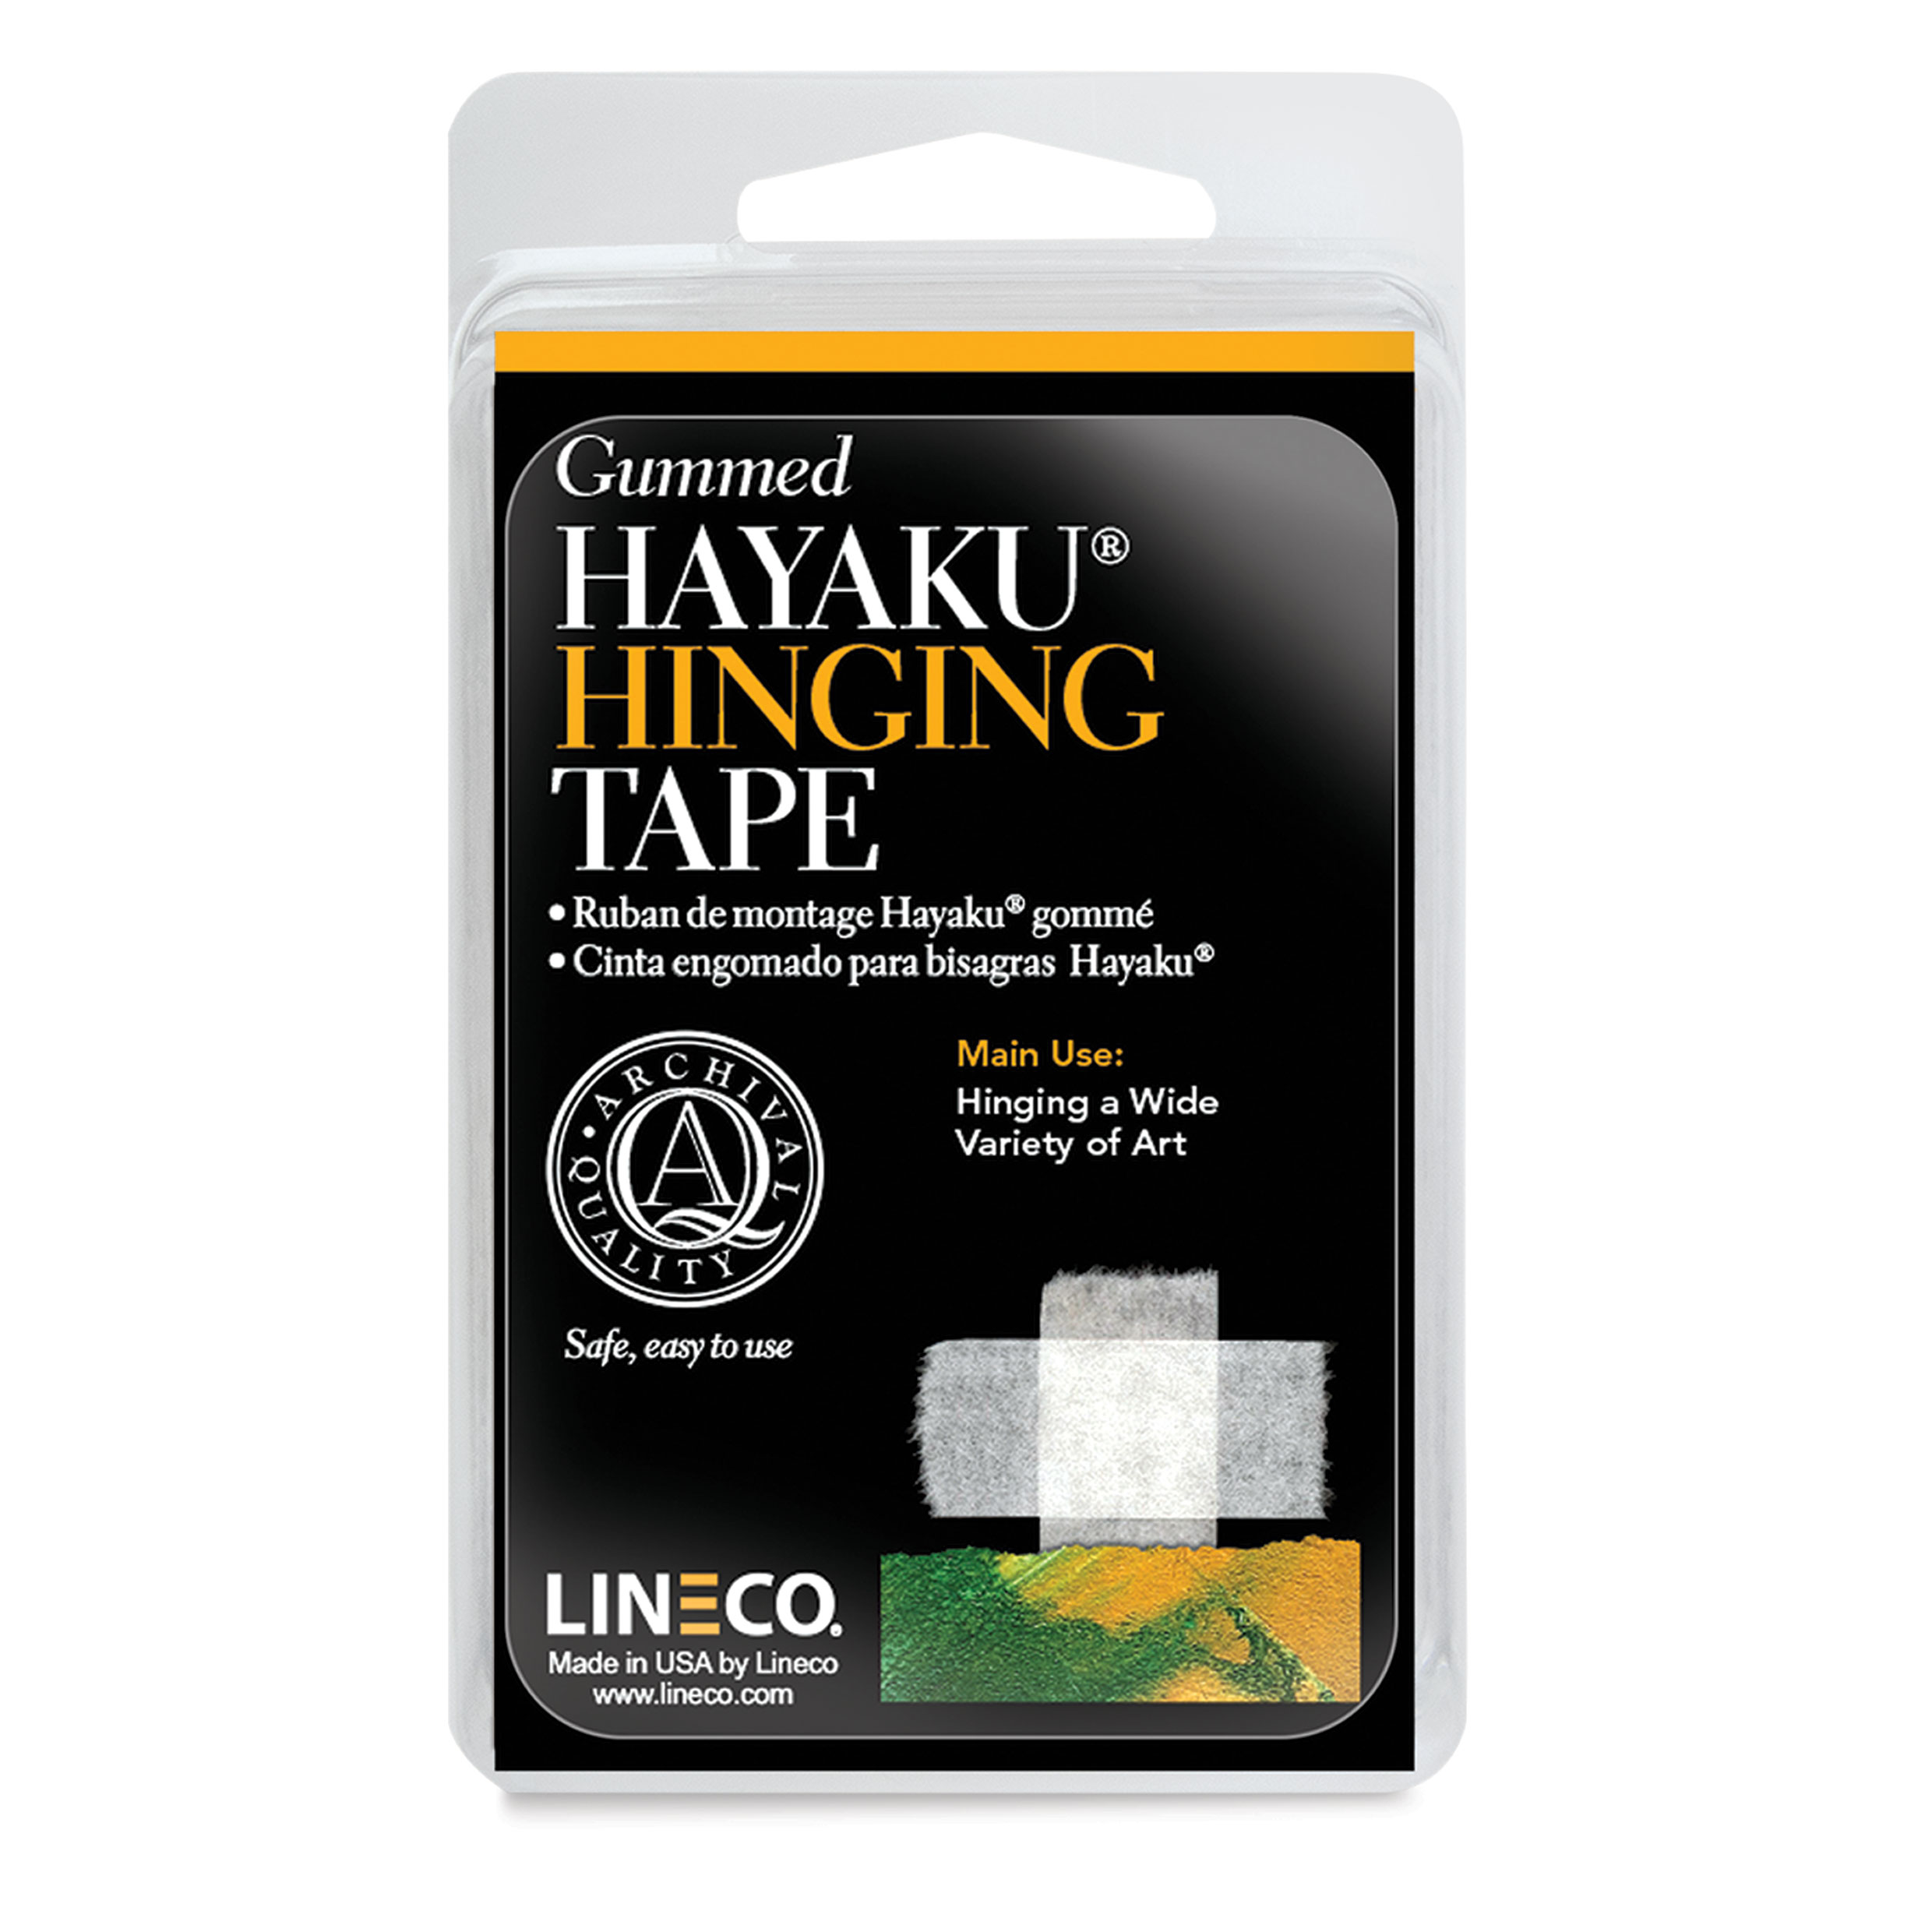 Lineco Gummed Linen Tape